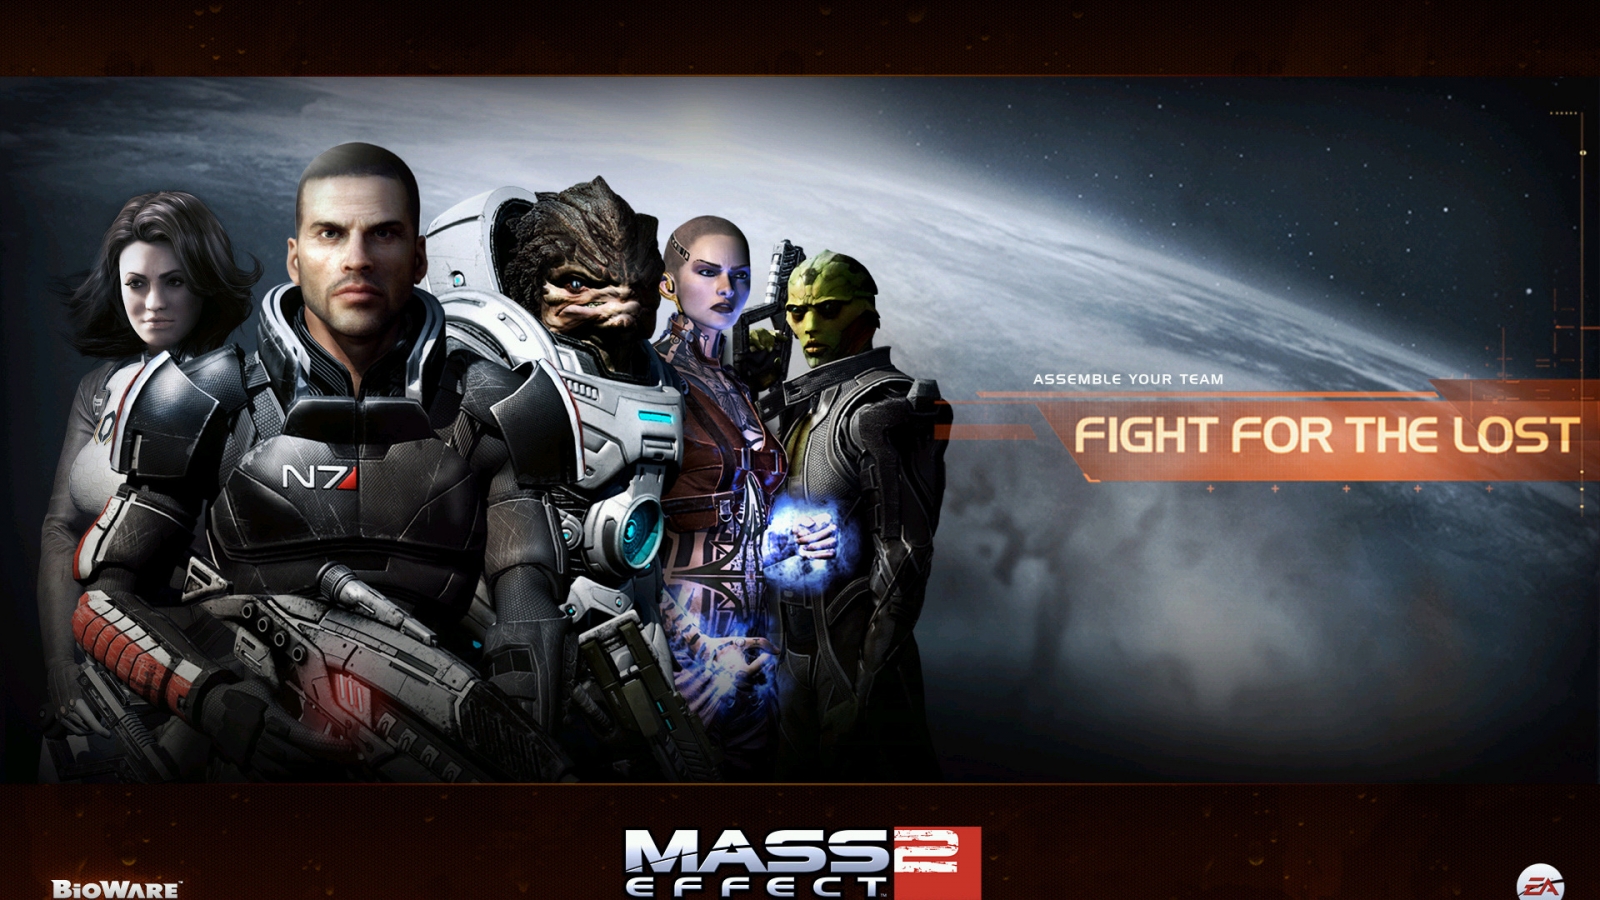 Mass Effect 2 for 1600 x 900 HDTV resolution